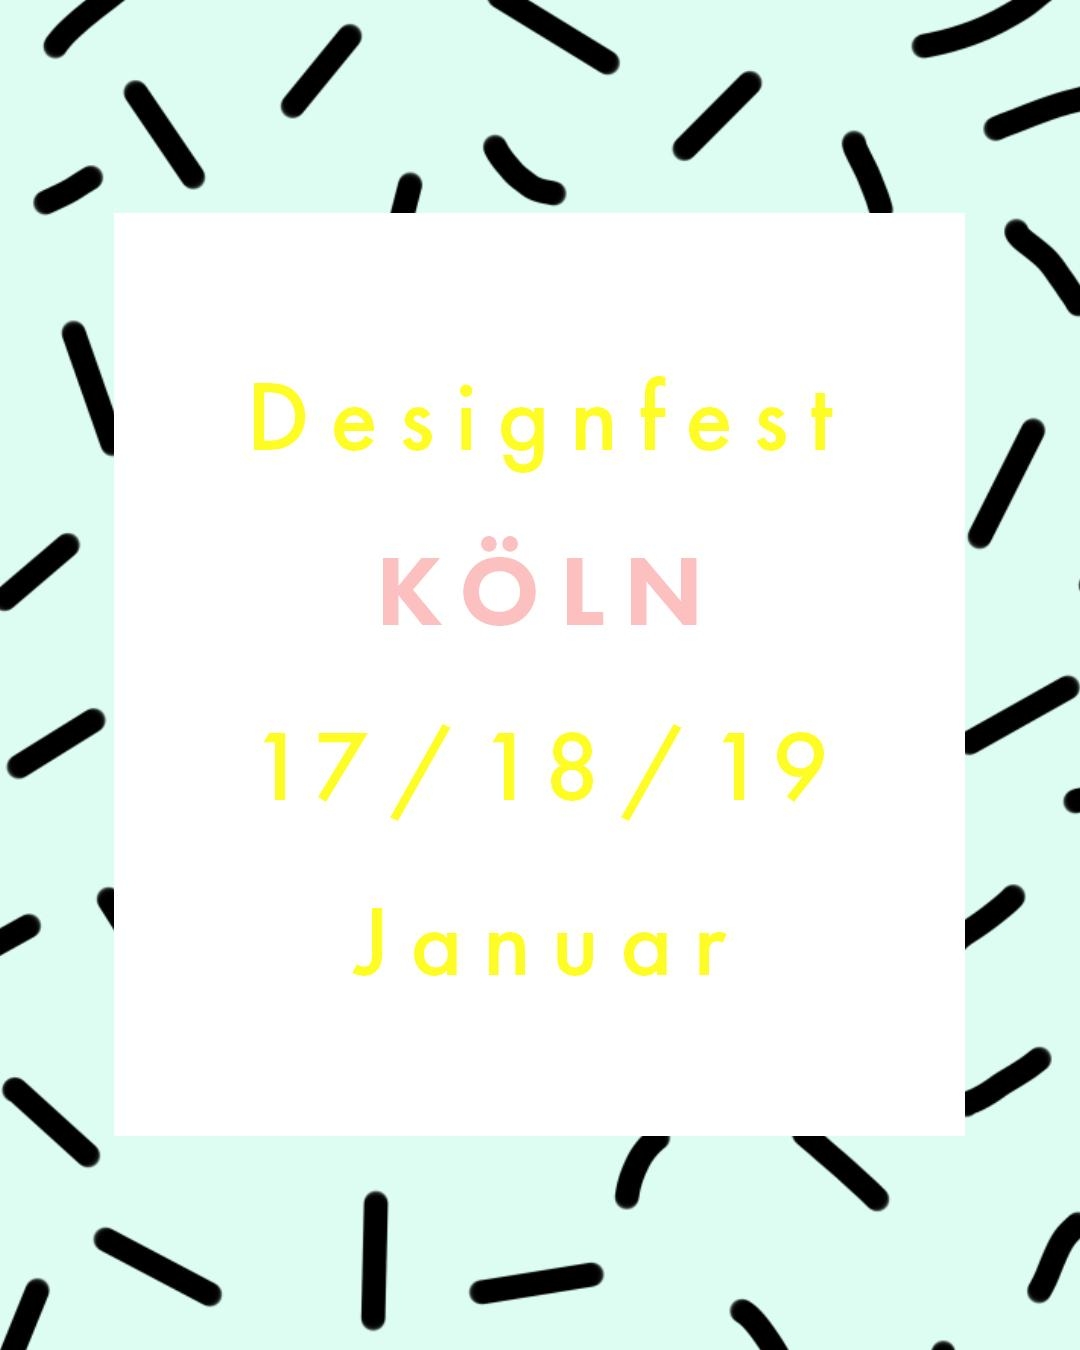 Los geht's in Köln im Rahmen der Imm Cologne - der internationalen Möbel- & Einrichtungsmesse 💛 #designfest #köln